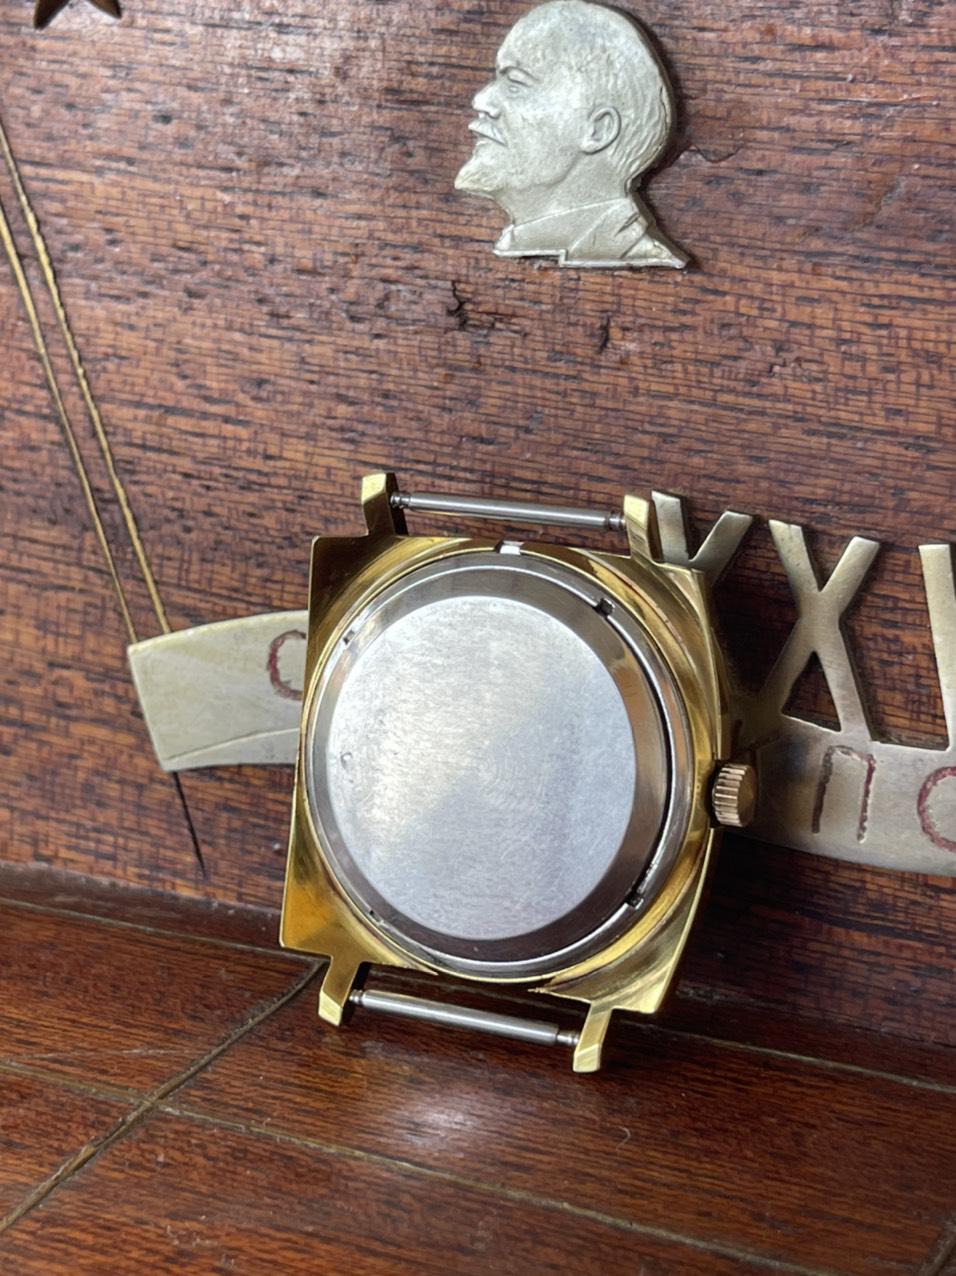 Đồng hồ nga vintage nguyên rin nguyên bản, hoạt động ổn định, đầy đủ sổ hộp, giá trị sưu tầm cao